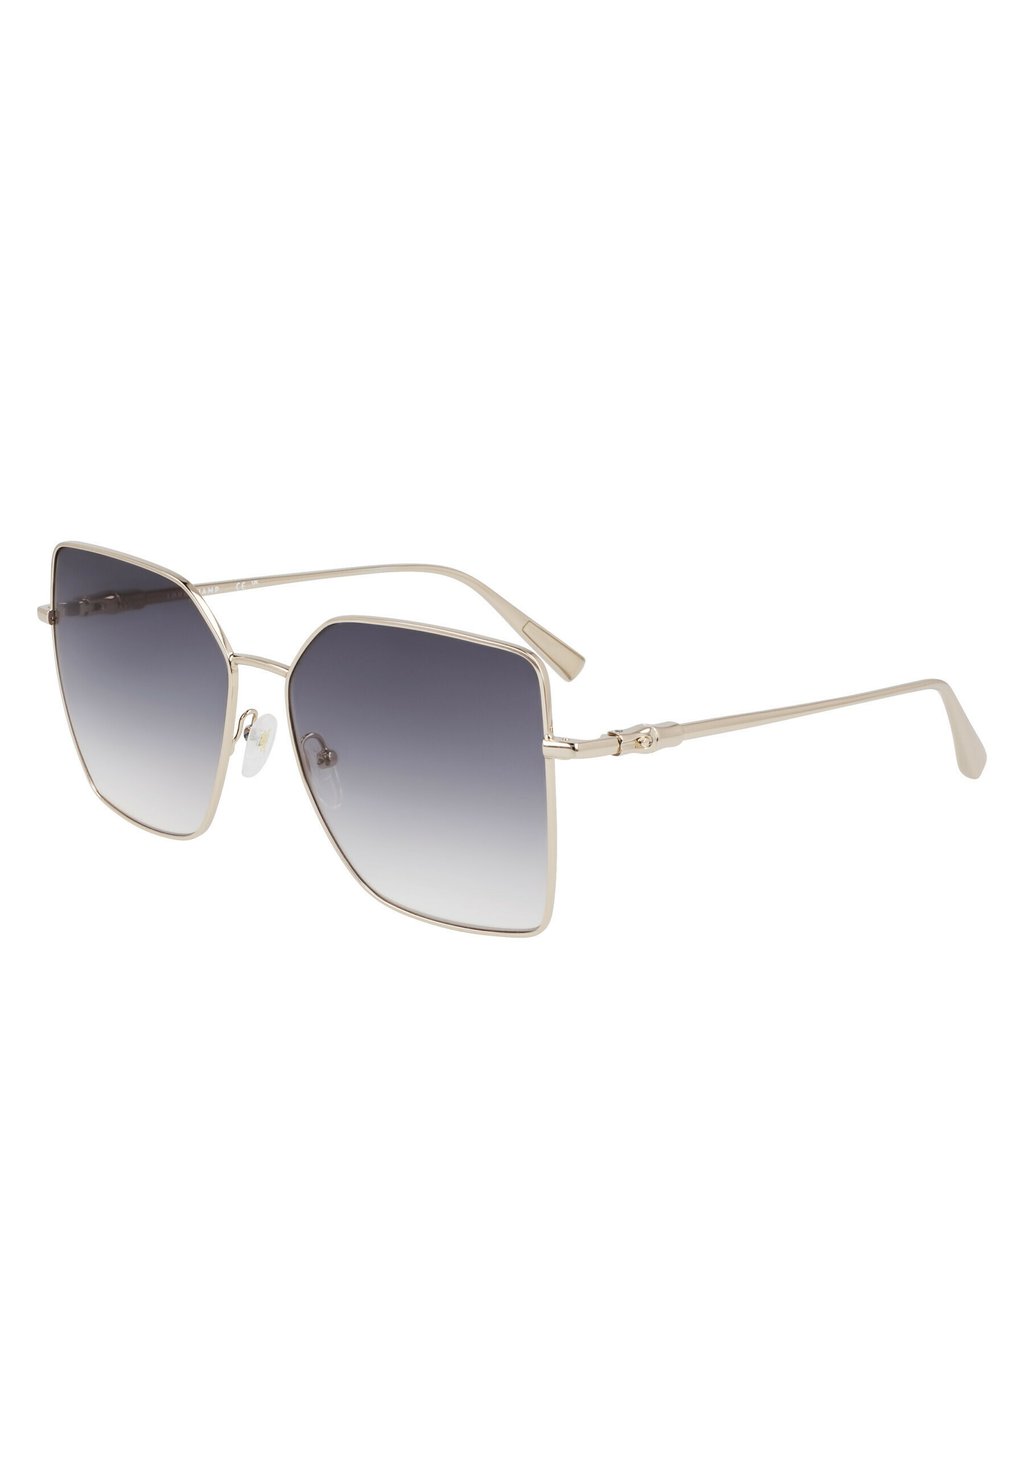 Солнцезащитные очки Longchamp, золотой градиентный дым